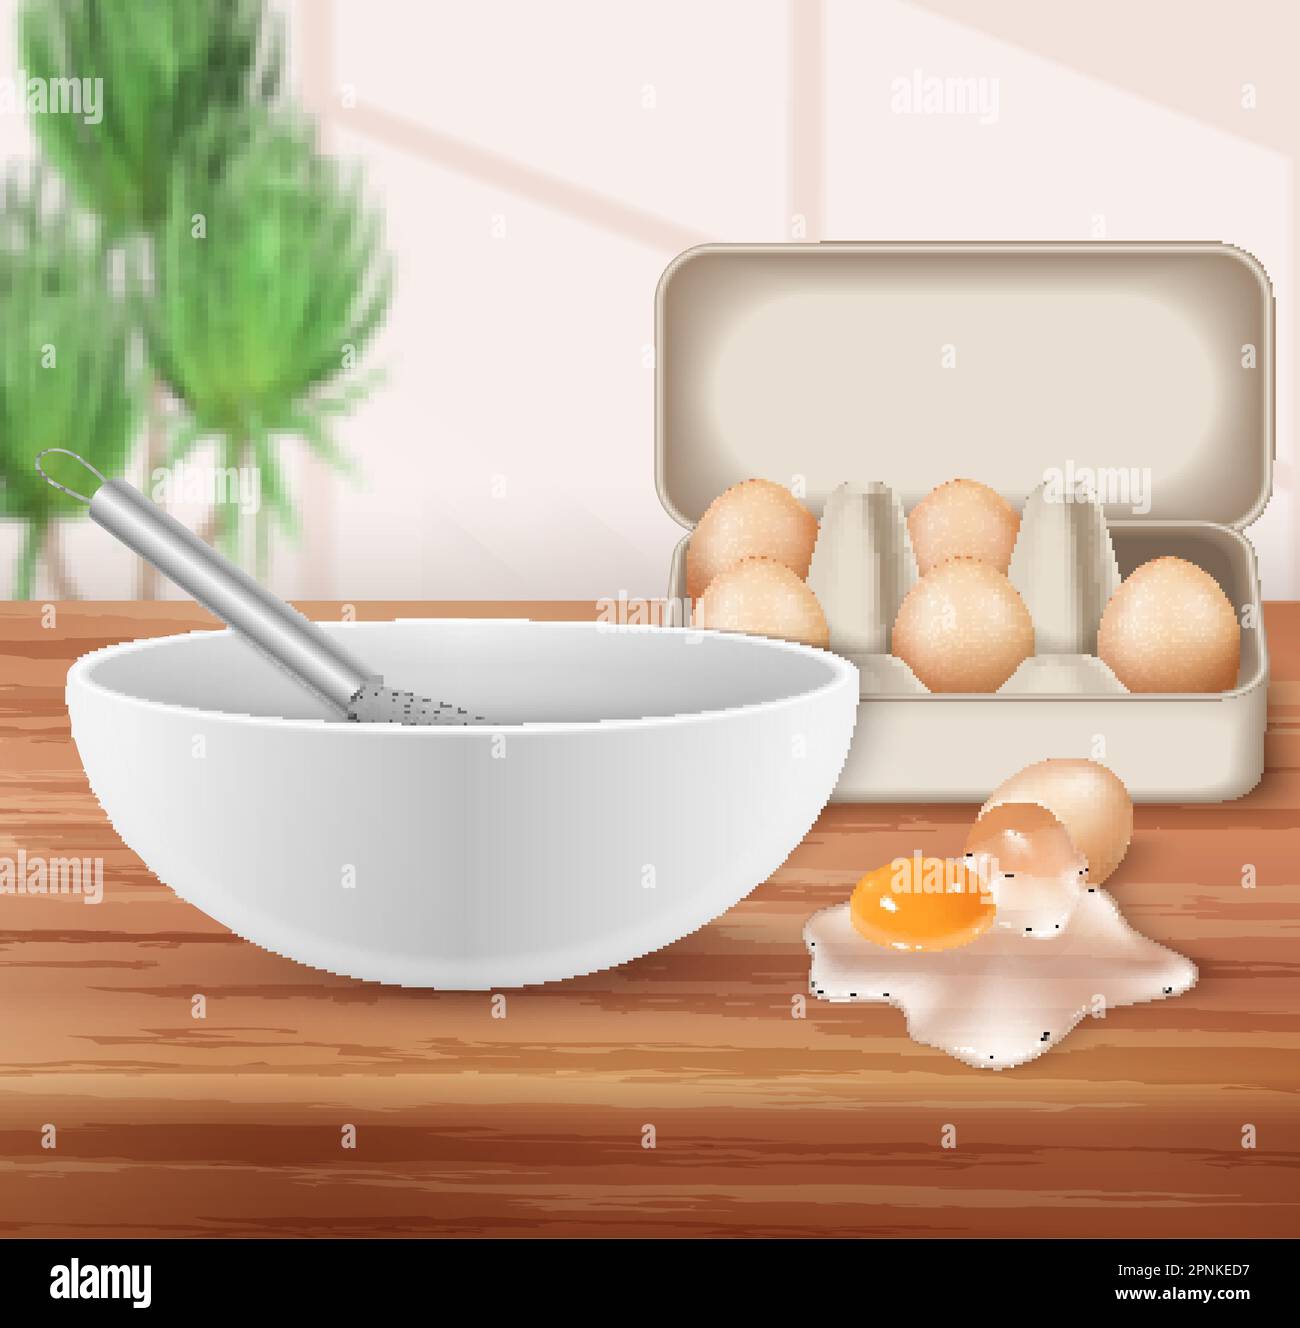 Uova da fattoria sfondo realistico con frusta per montare in ciotola e uova crude spezzate sparso su tavola illustrazione vettoriale Illustrazione Vettoriale